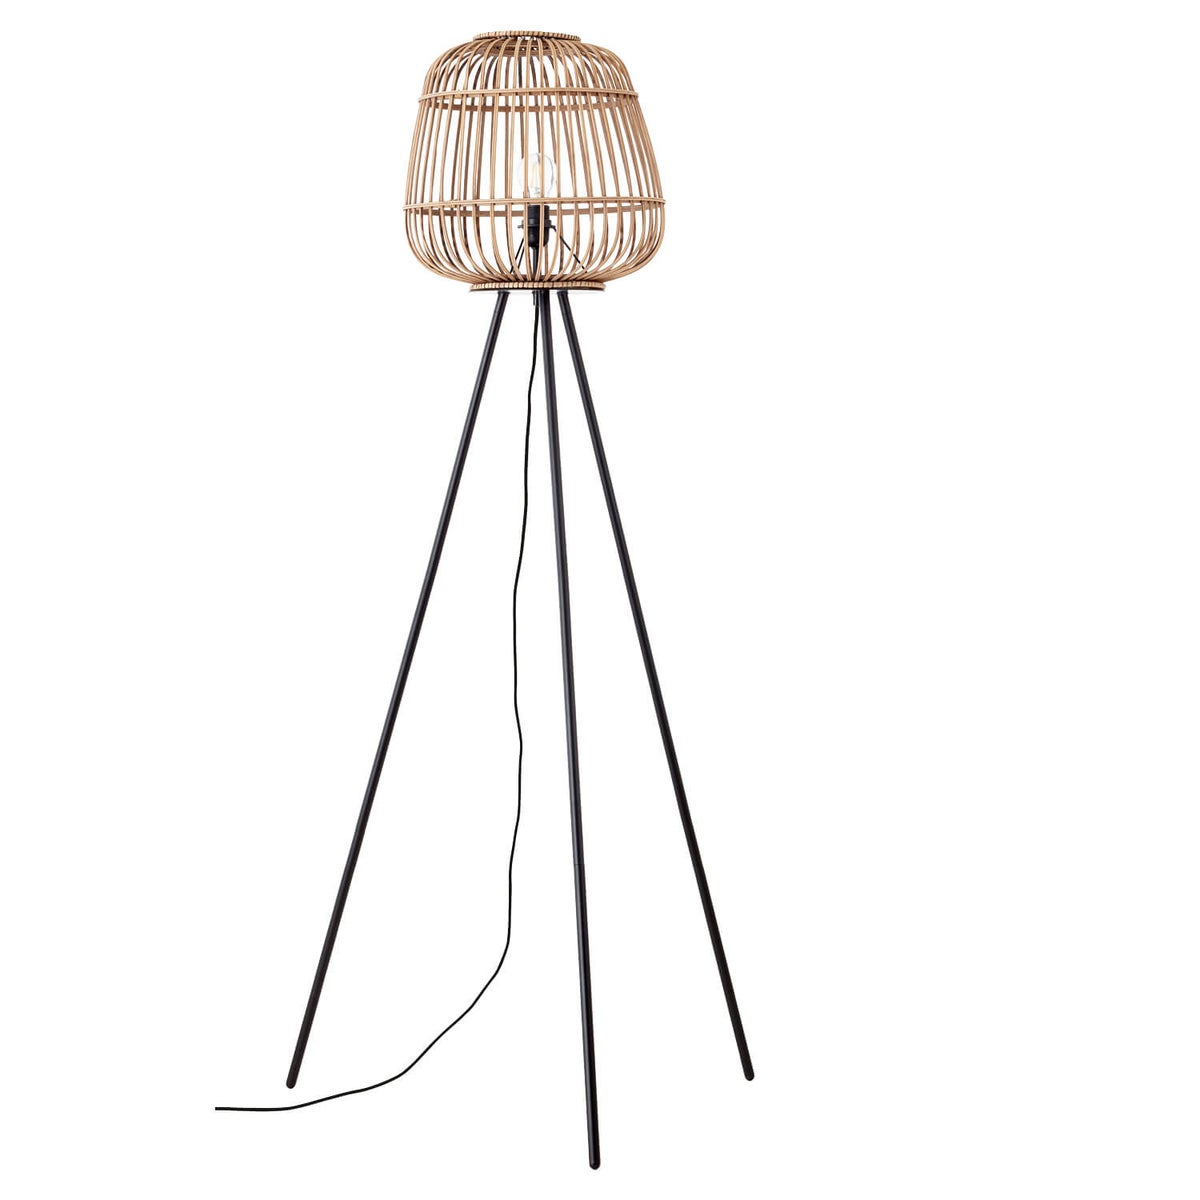 Stehlampe im Boho Style mit Rattan 'Die Natürliche', Dreibein Lampe in braun, Bambus, Korb bzw. Holz Optik, Lampenschirm aus Korbgeflecht fürs Wohnzimmer und Schlafzimmer